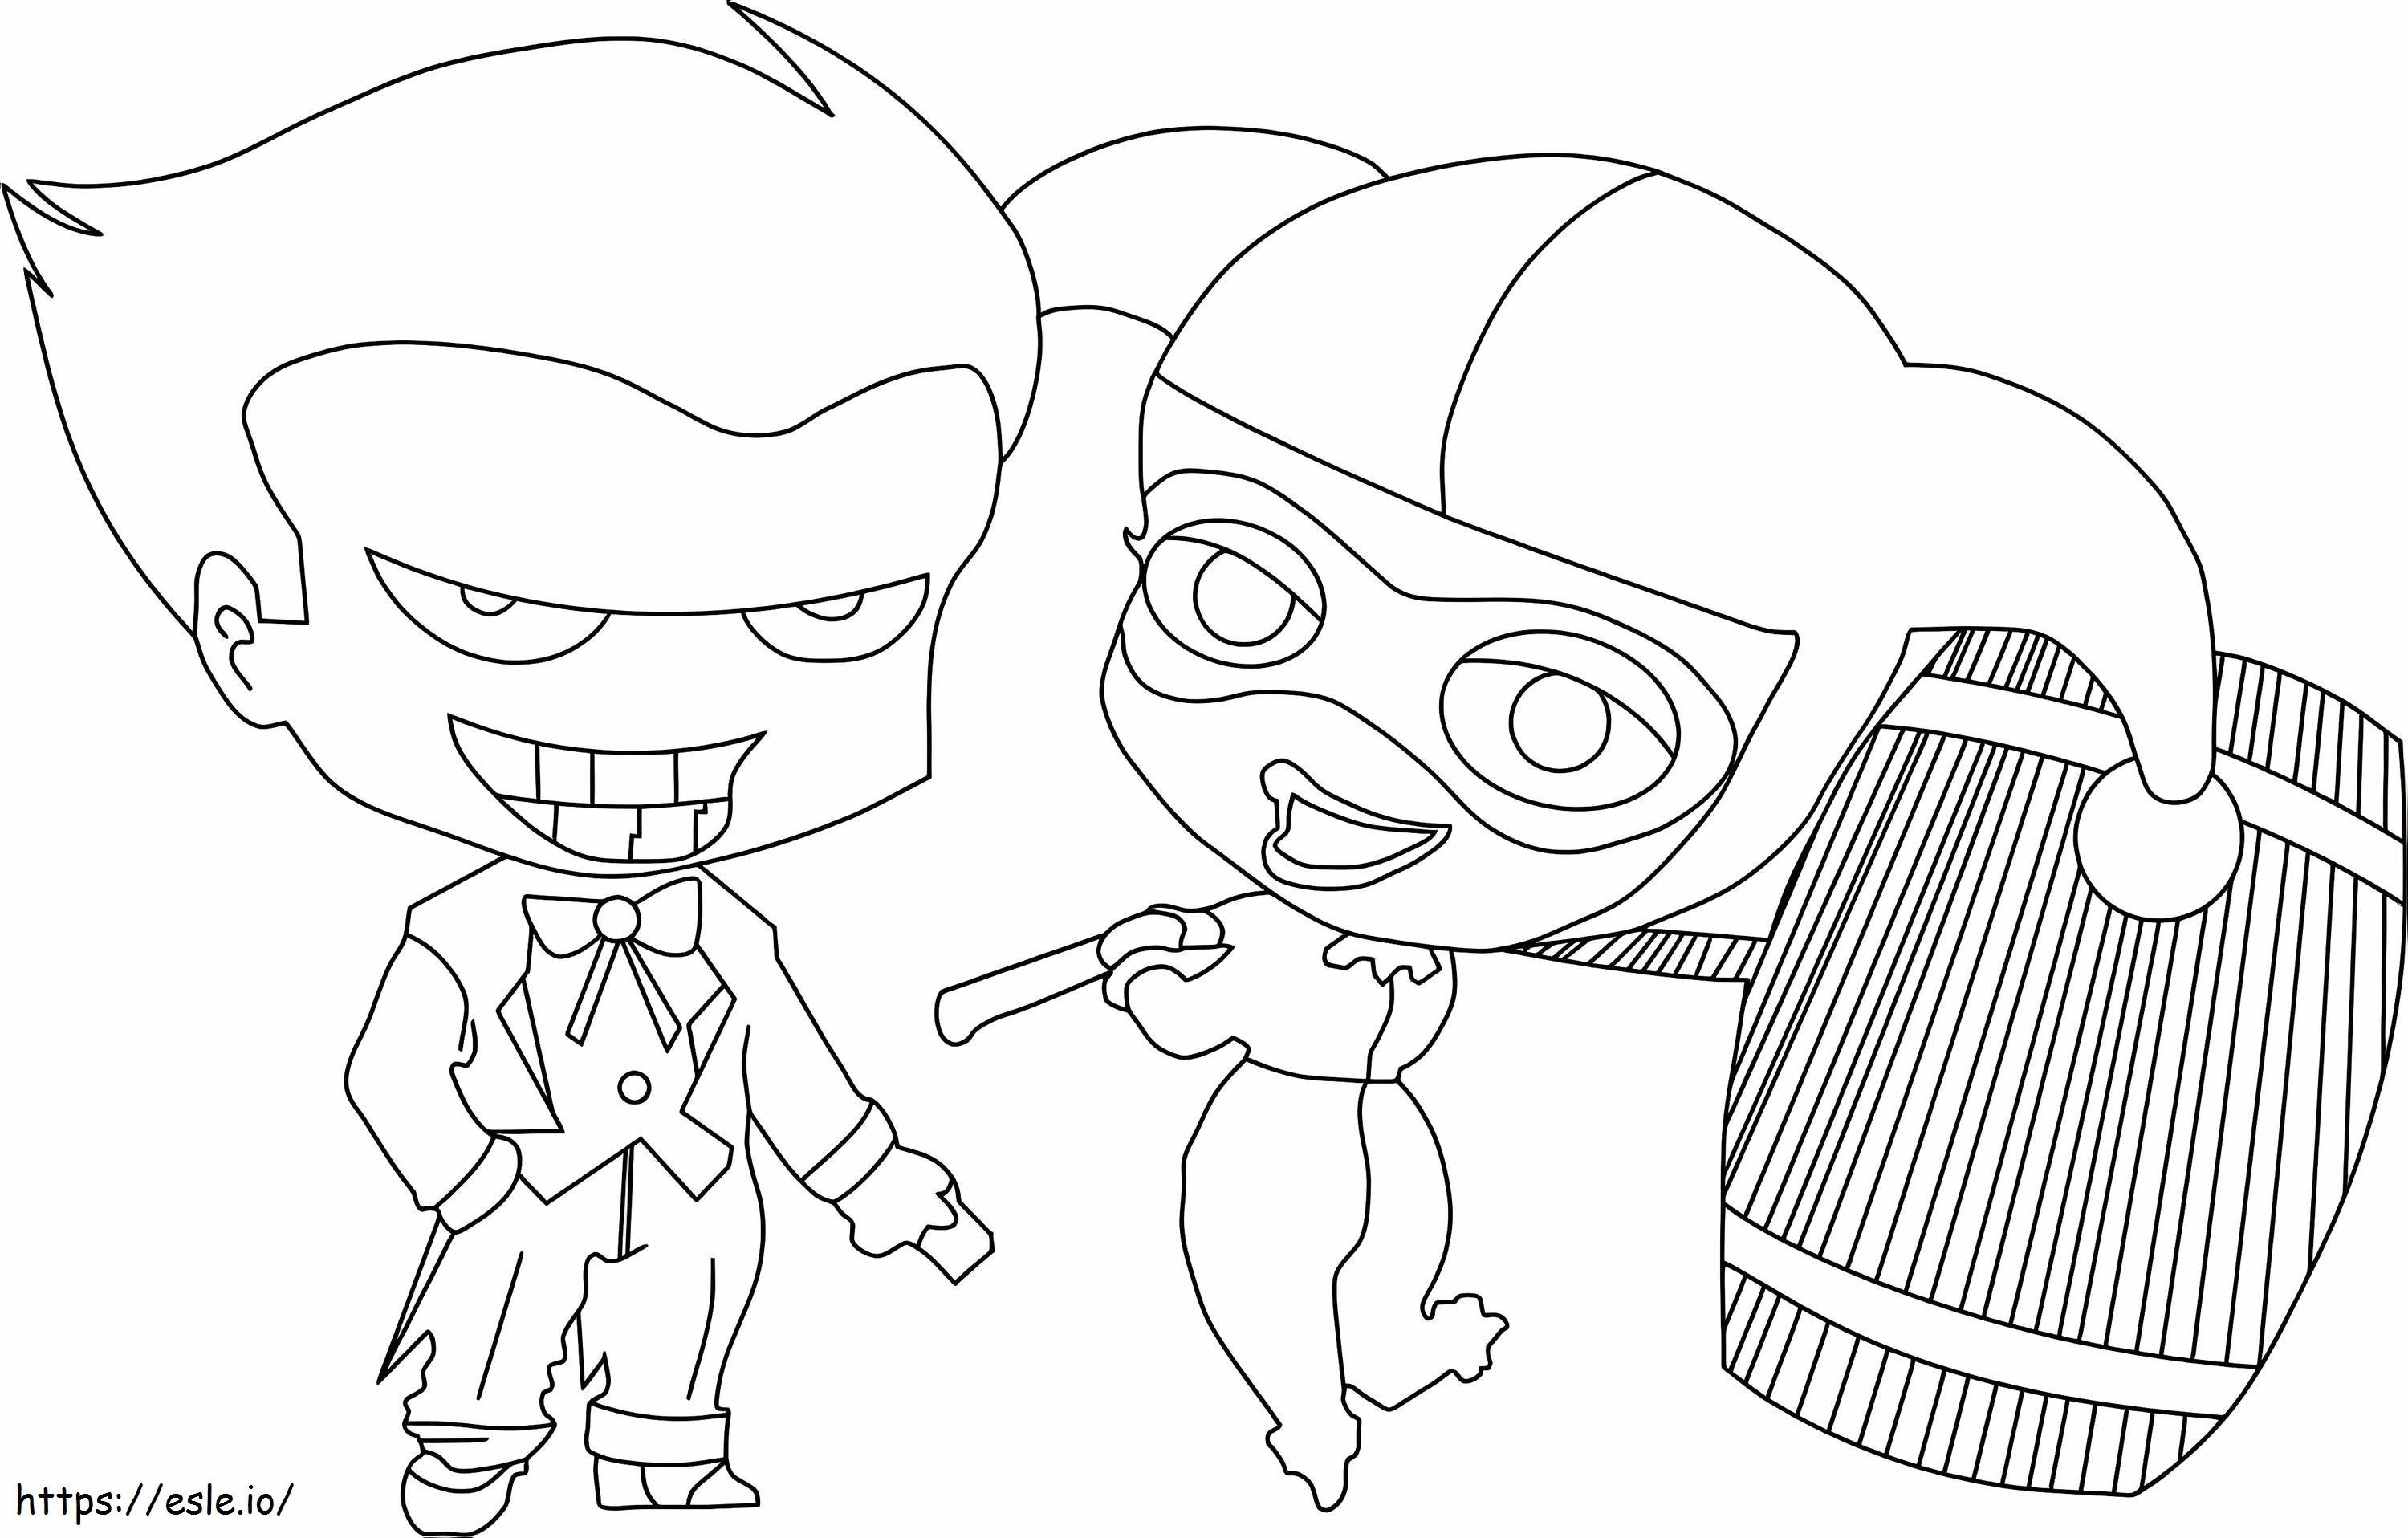 Chibi Joker und Chibi Harley Quinn halten einen Hammer ausmalbilder